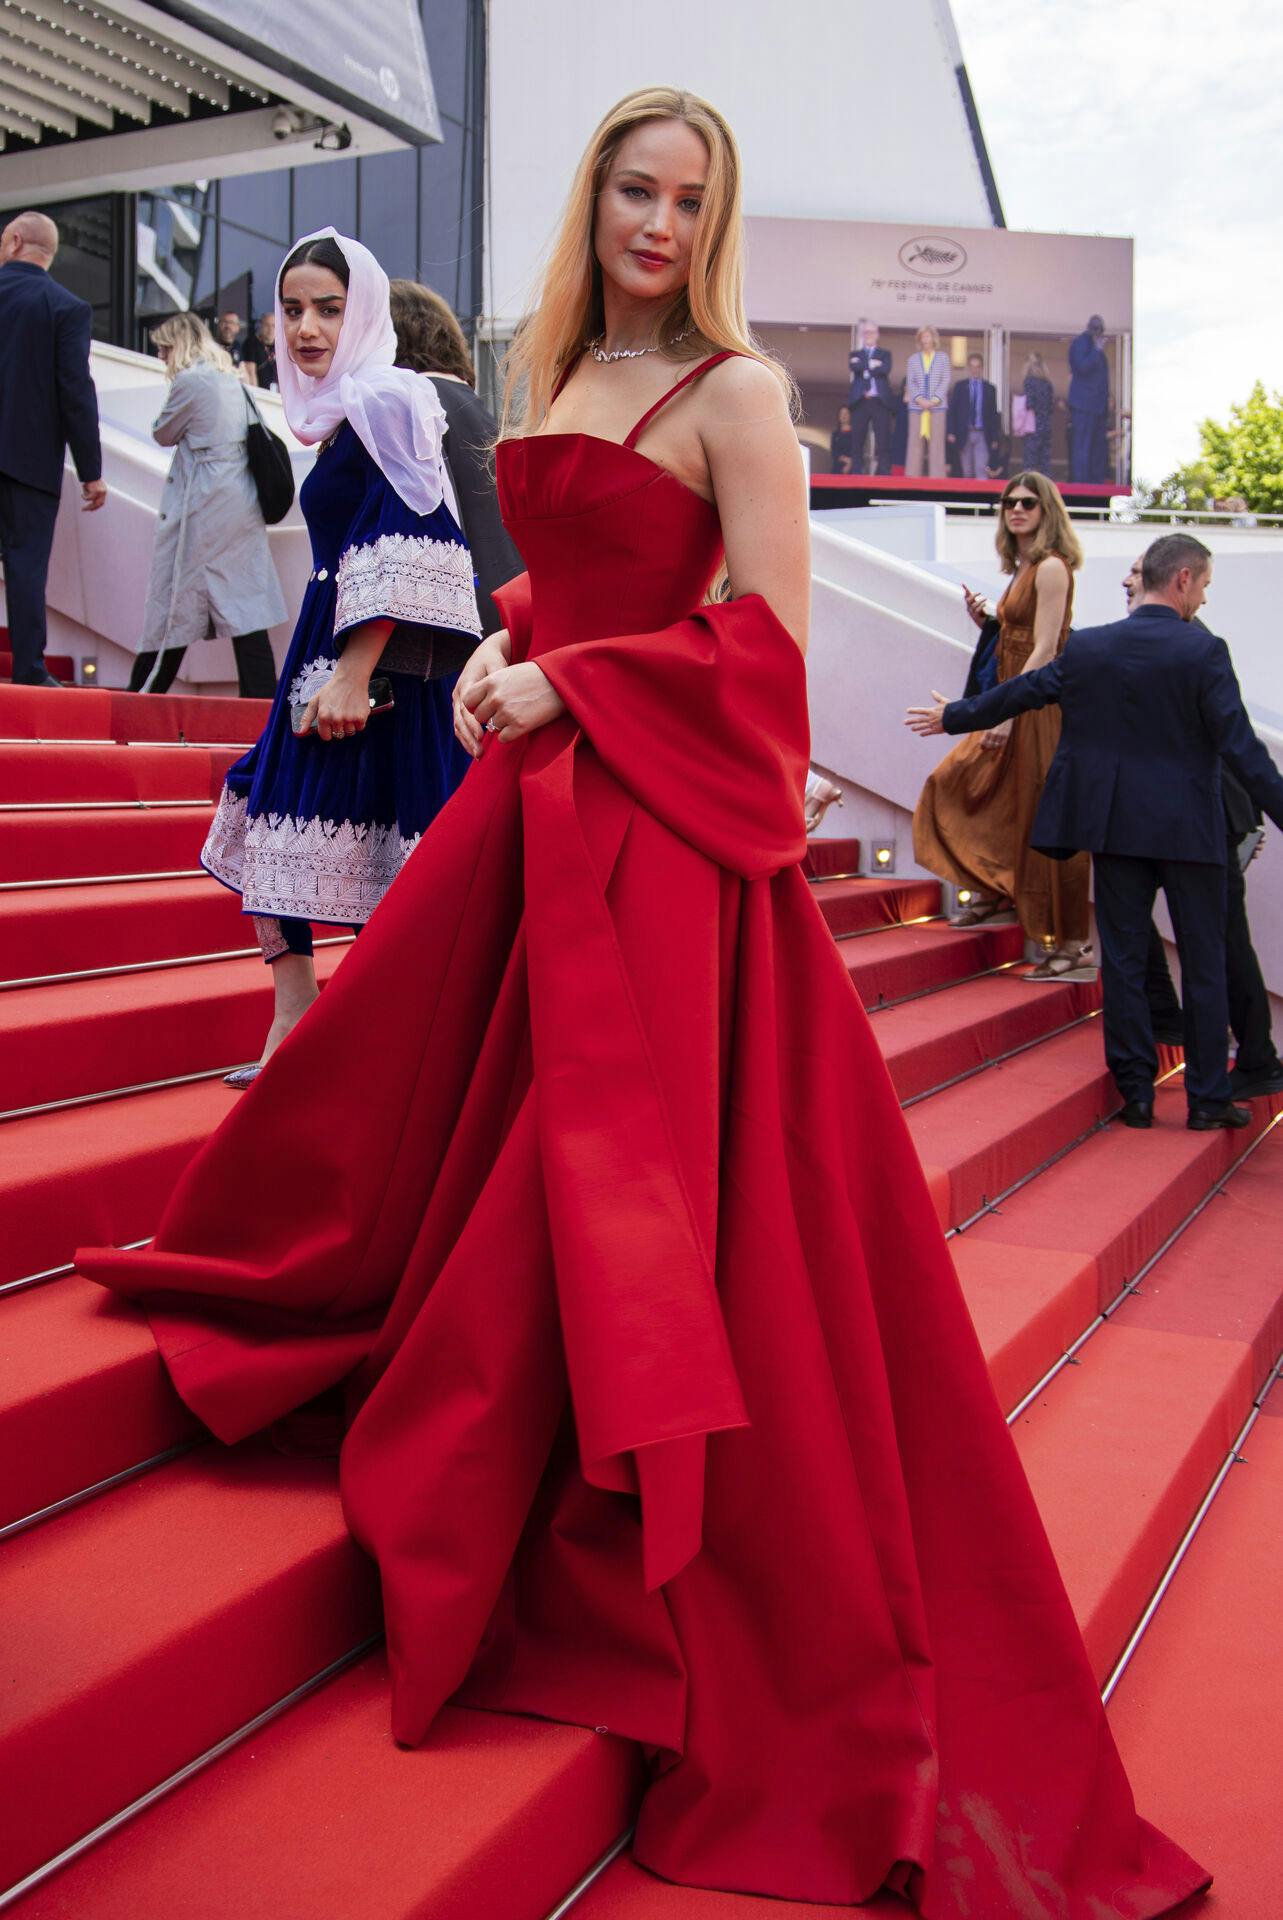 Jennifer Lawrence lignede en million på Cannes-trapperne.
